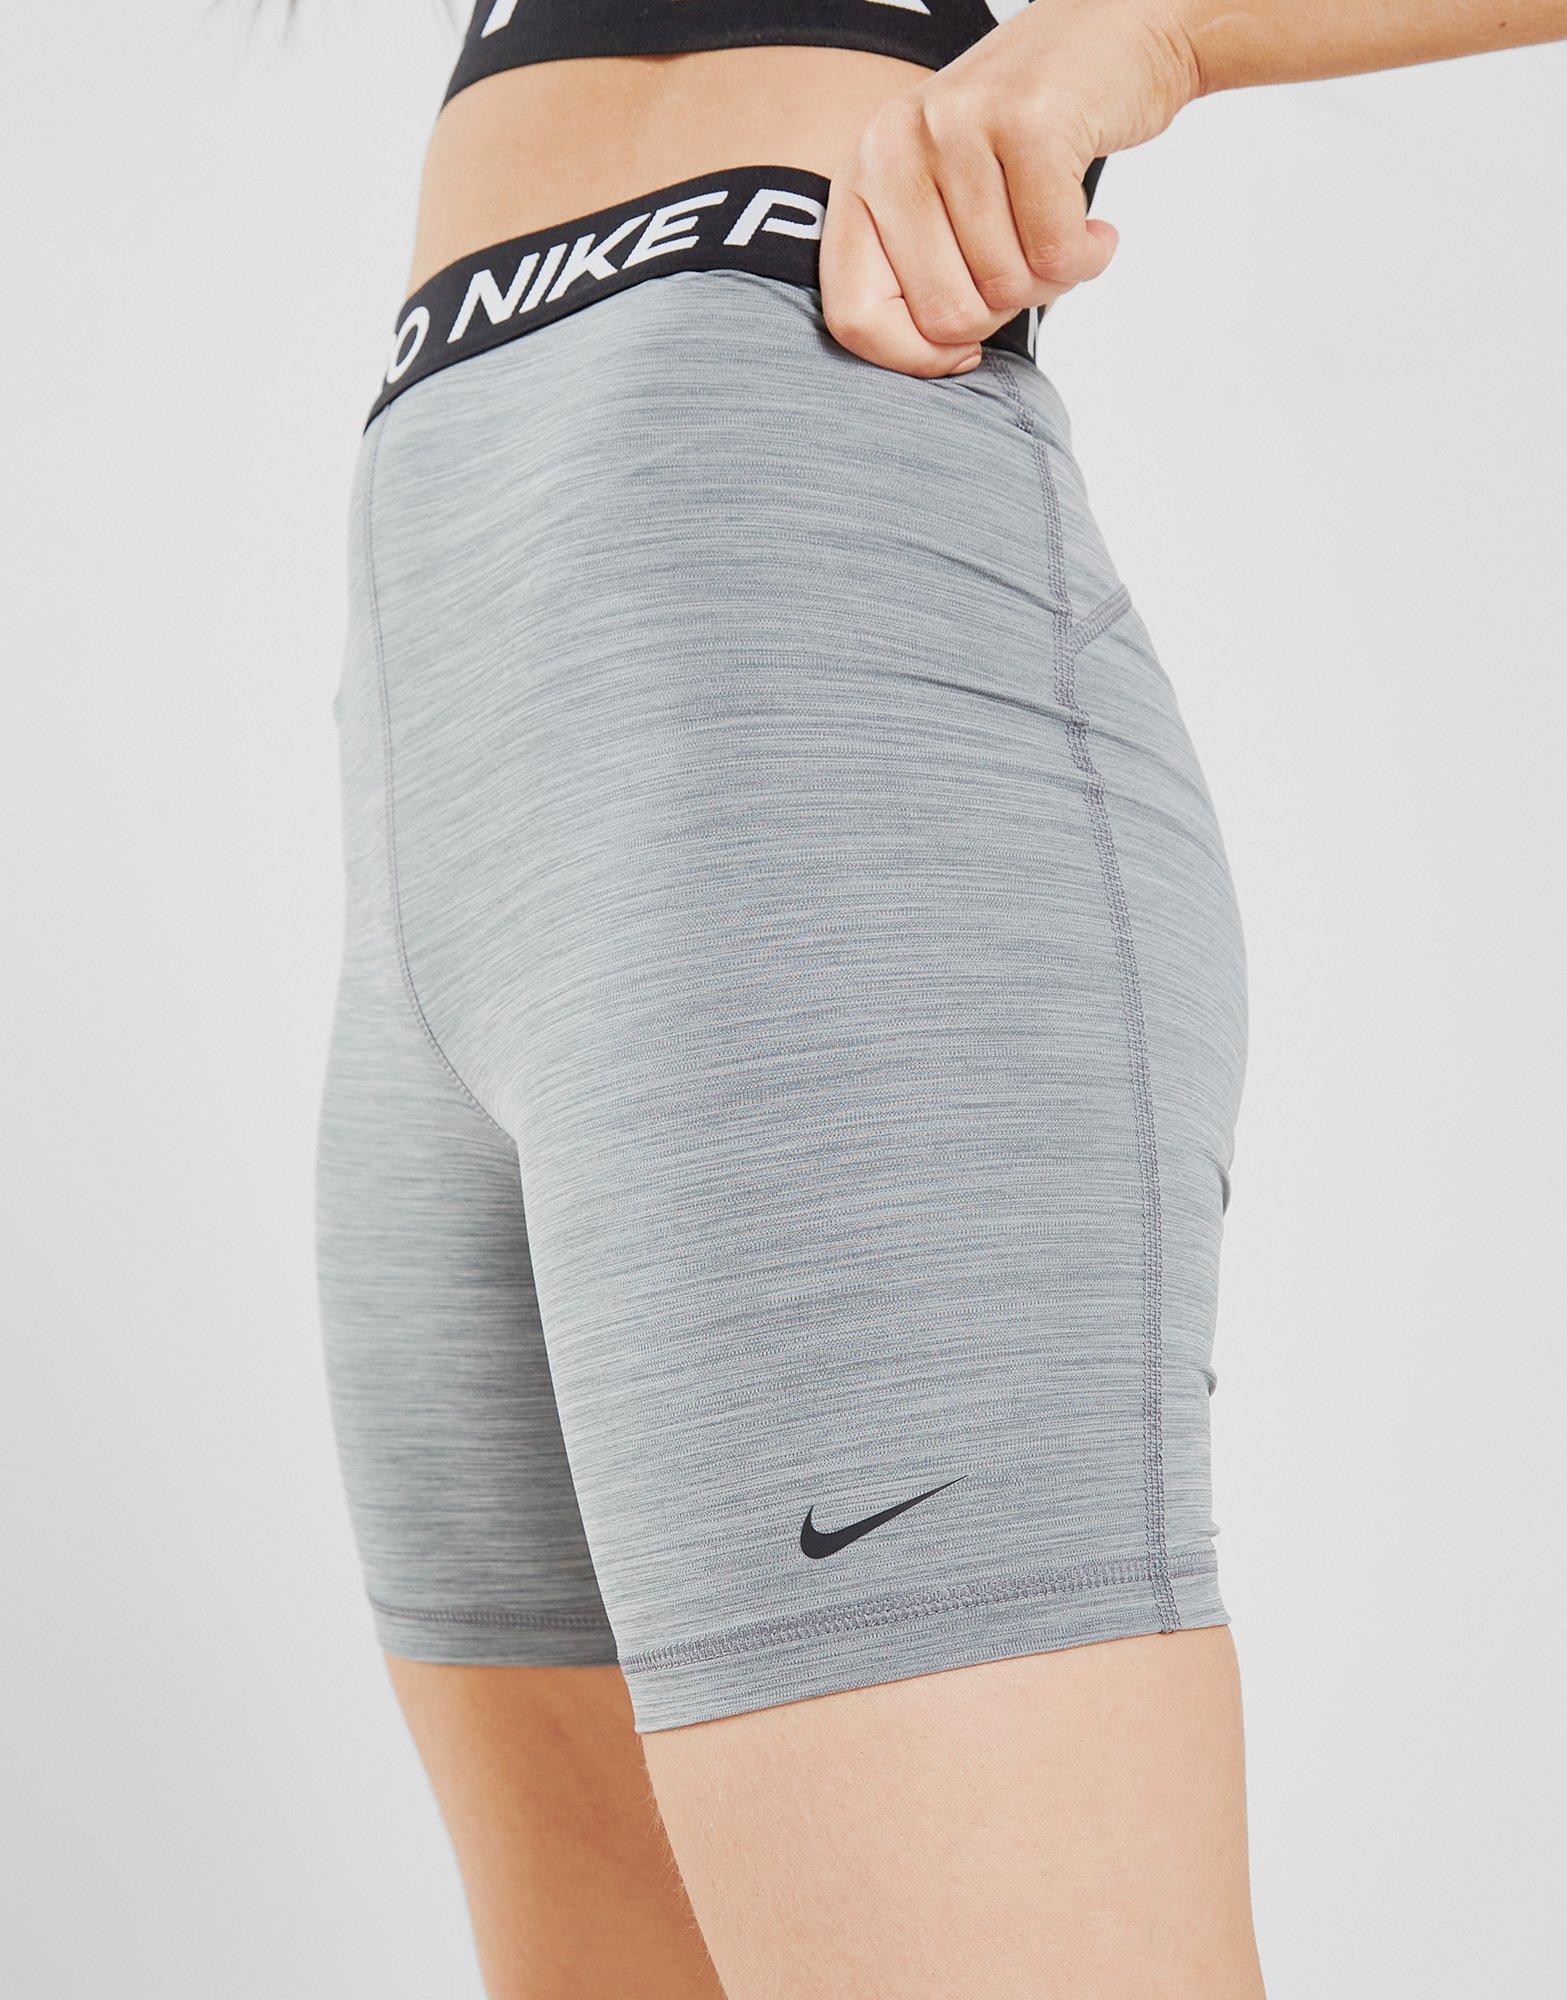 nike cycle shorts grey